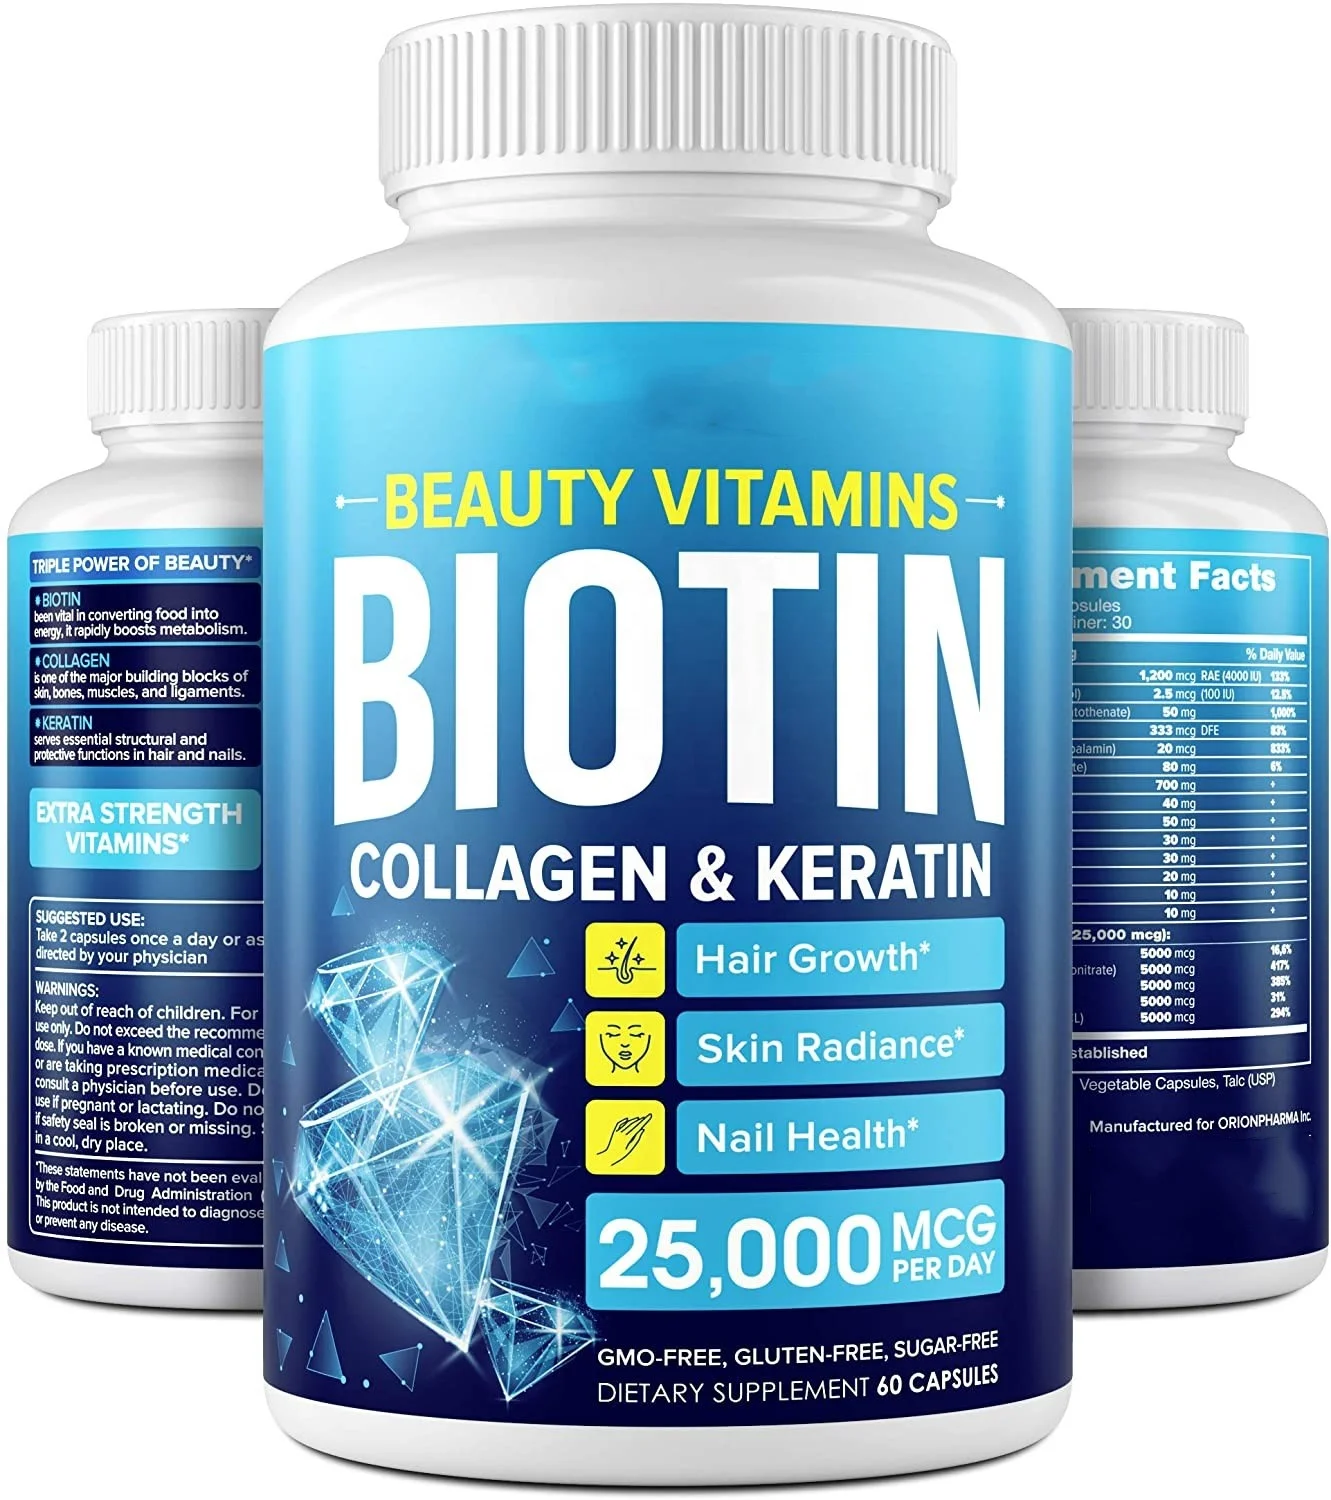 
Биотин, кератин, Коллагеновые капсулы, натуральный морской коллаген, кератин, биотин для роста волос, биотин, коллаген 